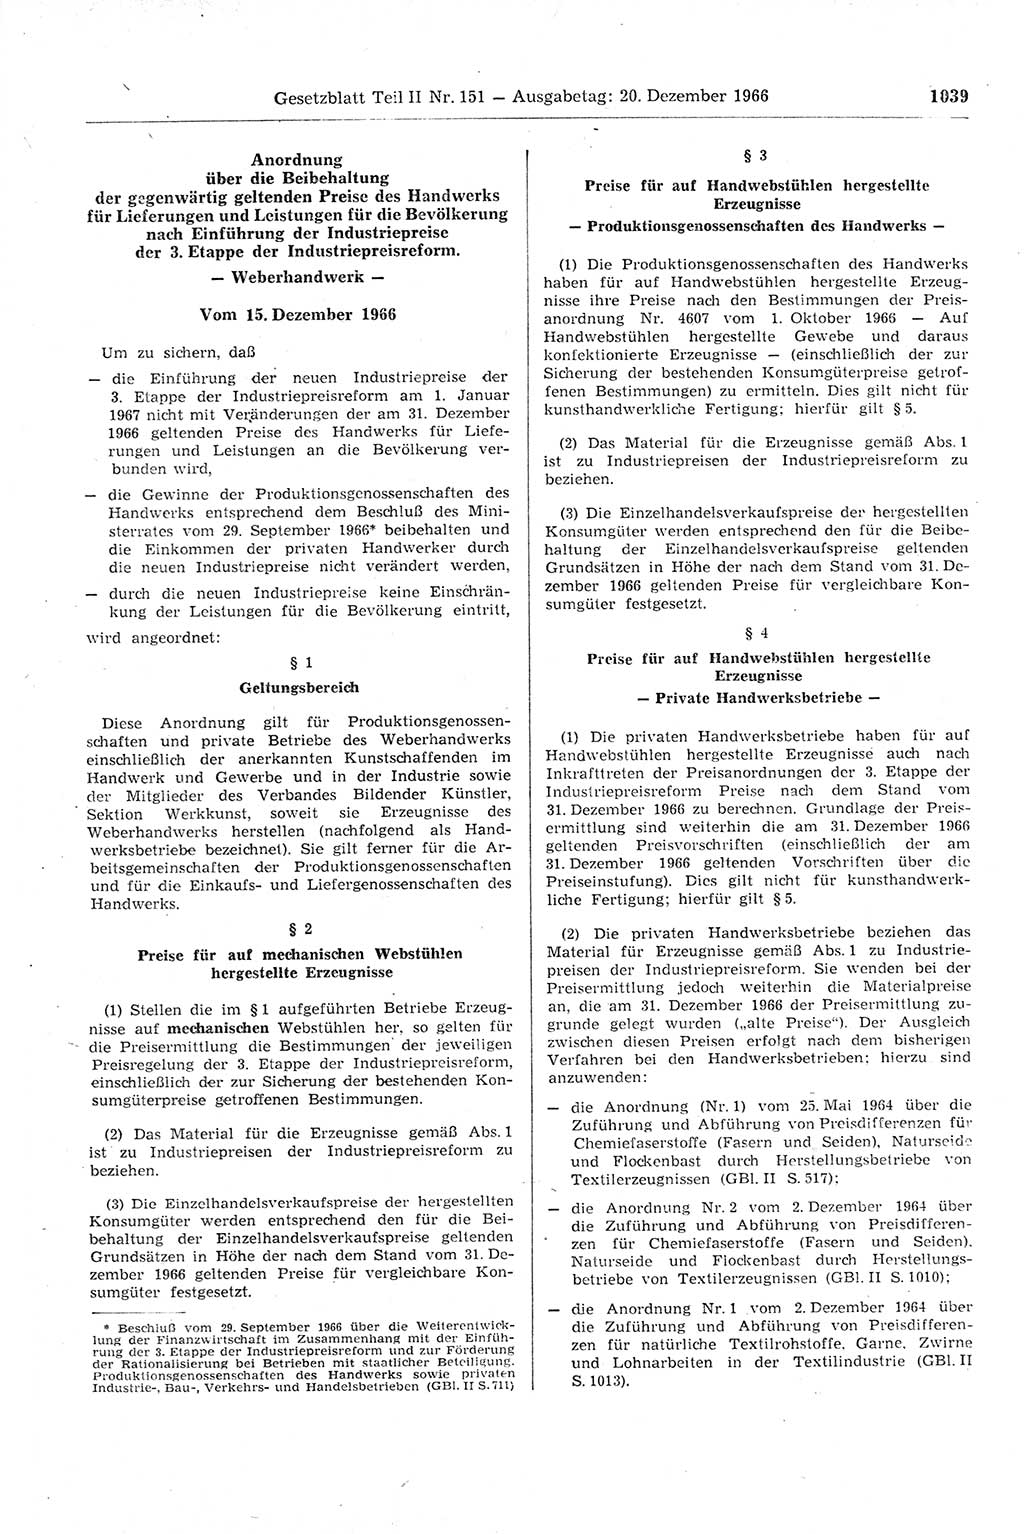 Gesetzblatt (GBl.) der Deutschen Demokratischen Republik (DDR) Teil ⅠⅠ 1966, Seite 1039 (GBl. DDR ⅠⅠ 1966, S. 1039)